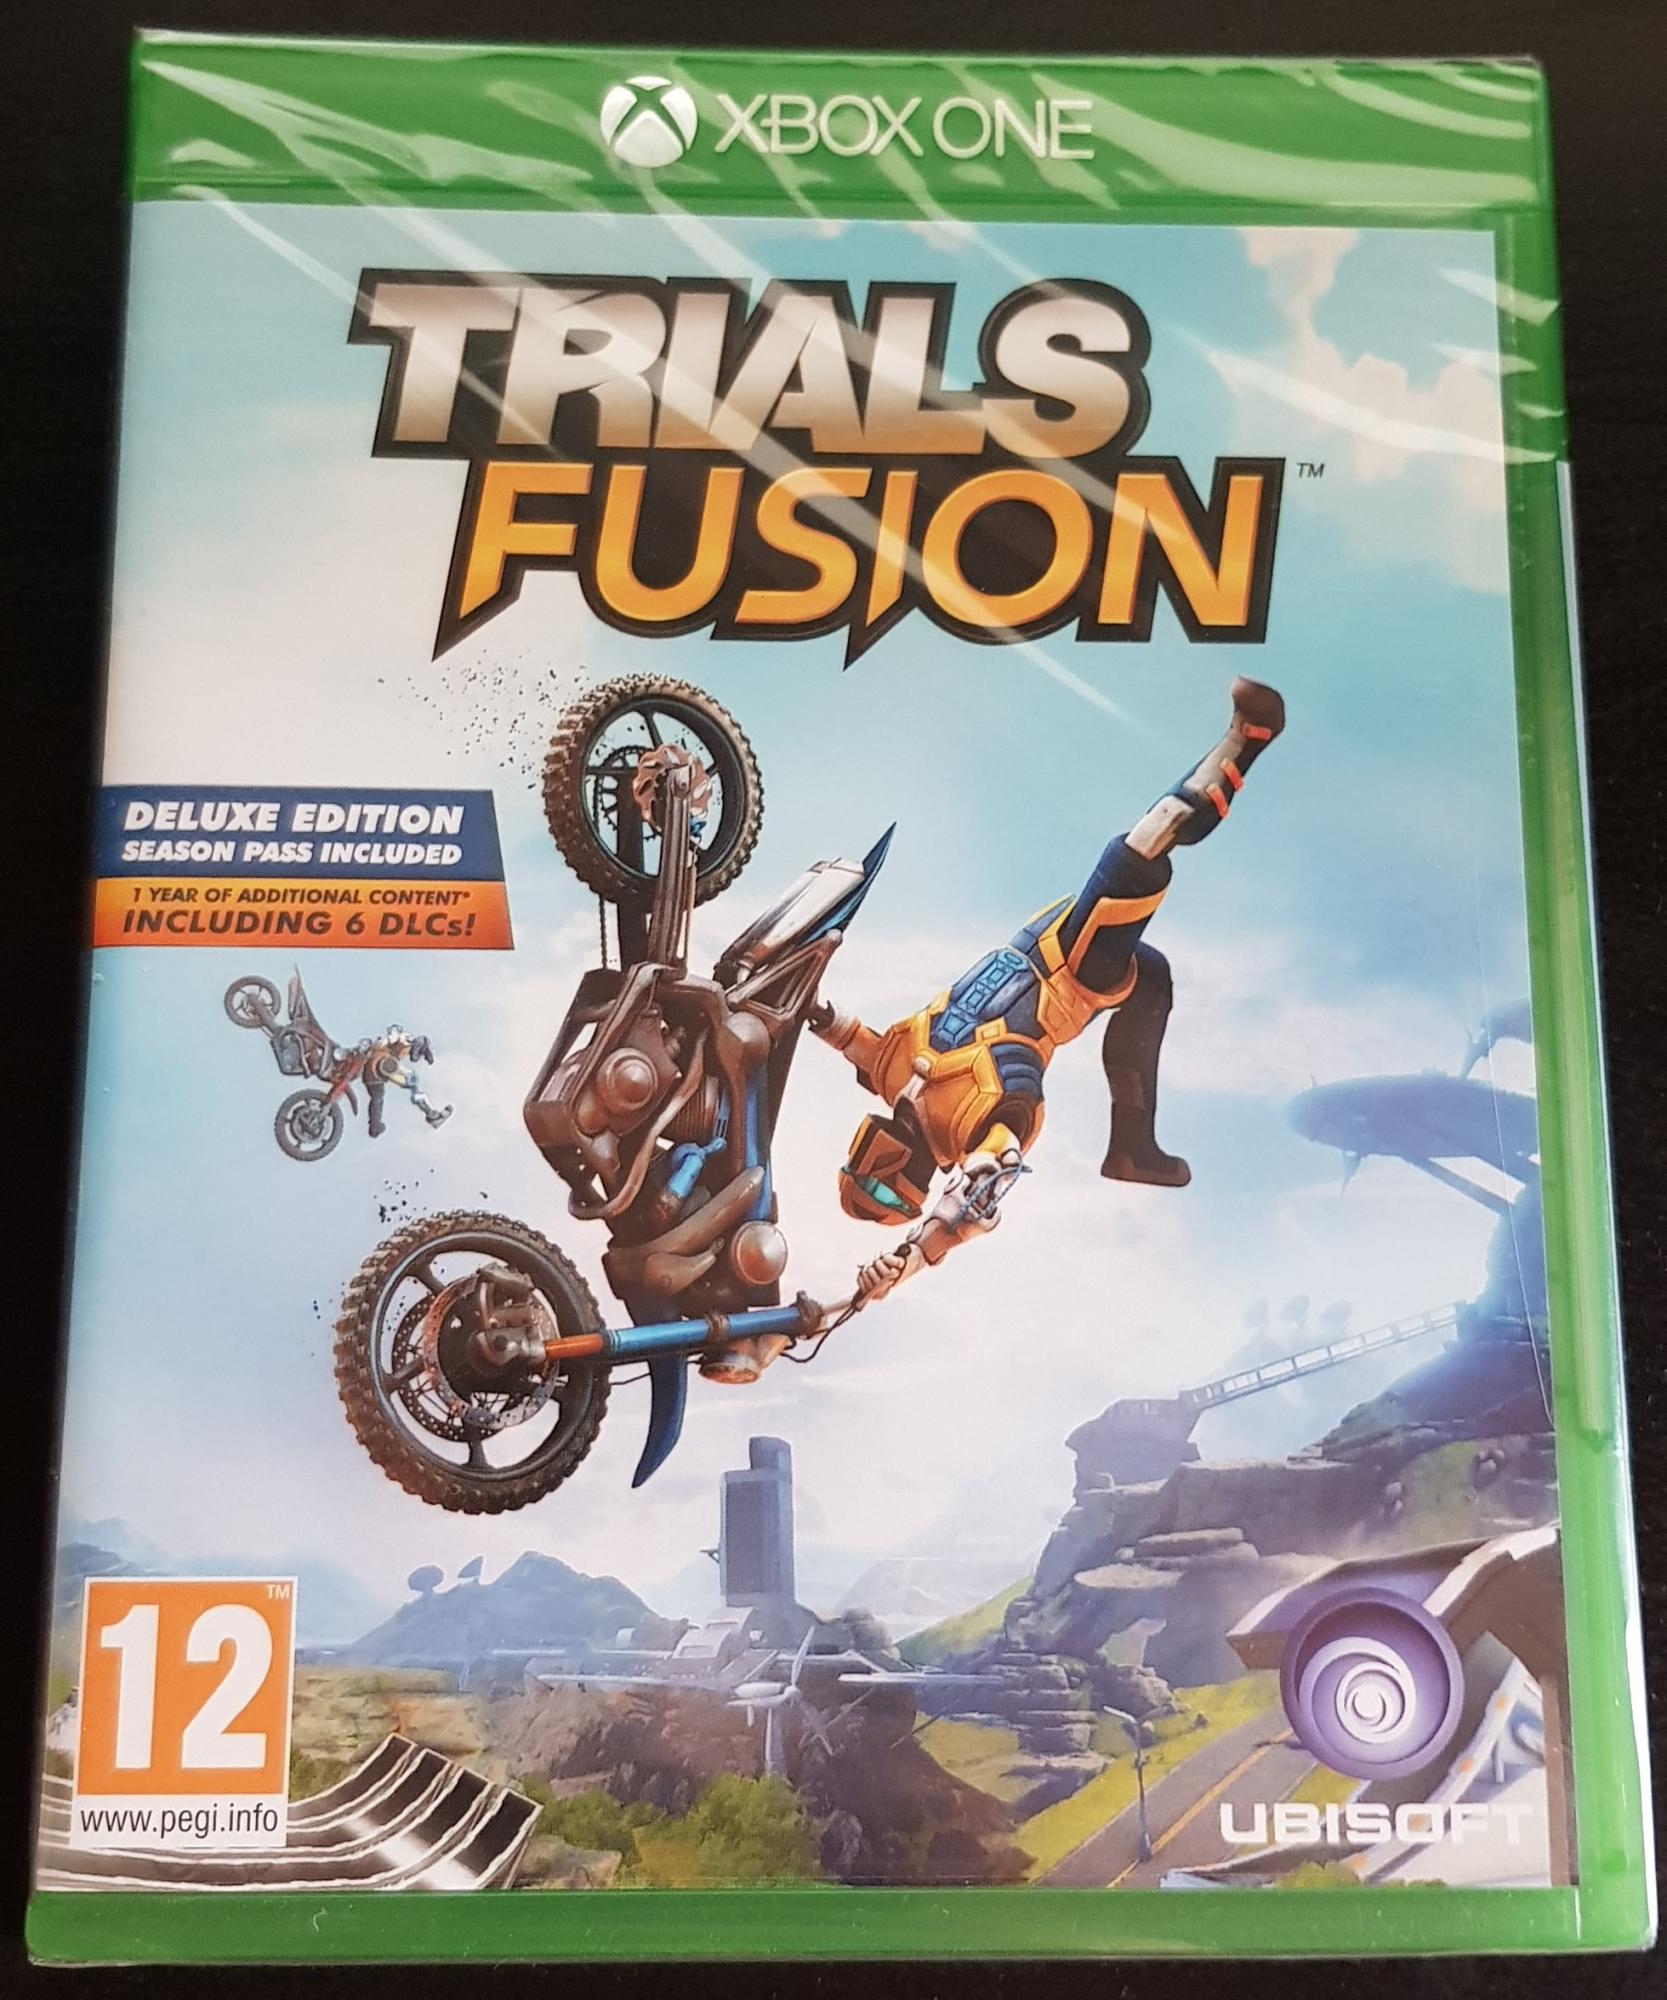 Игра Trials Fusion для Xbox One 89256150066 купить 1